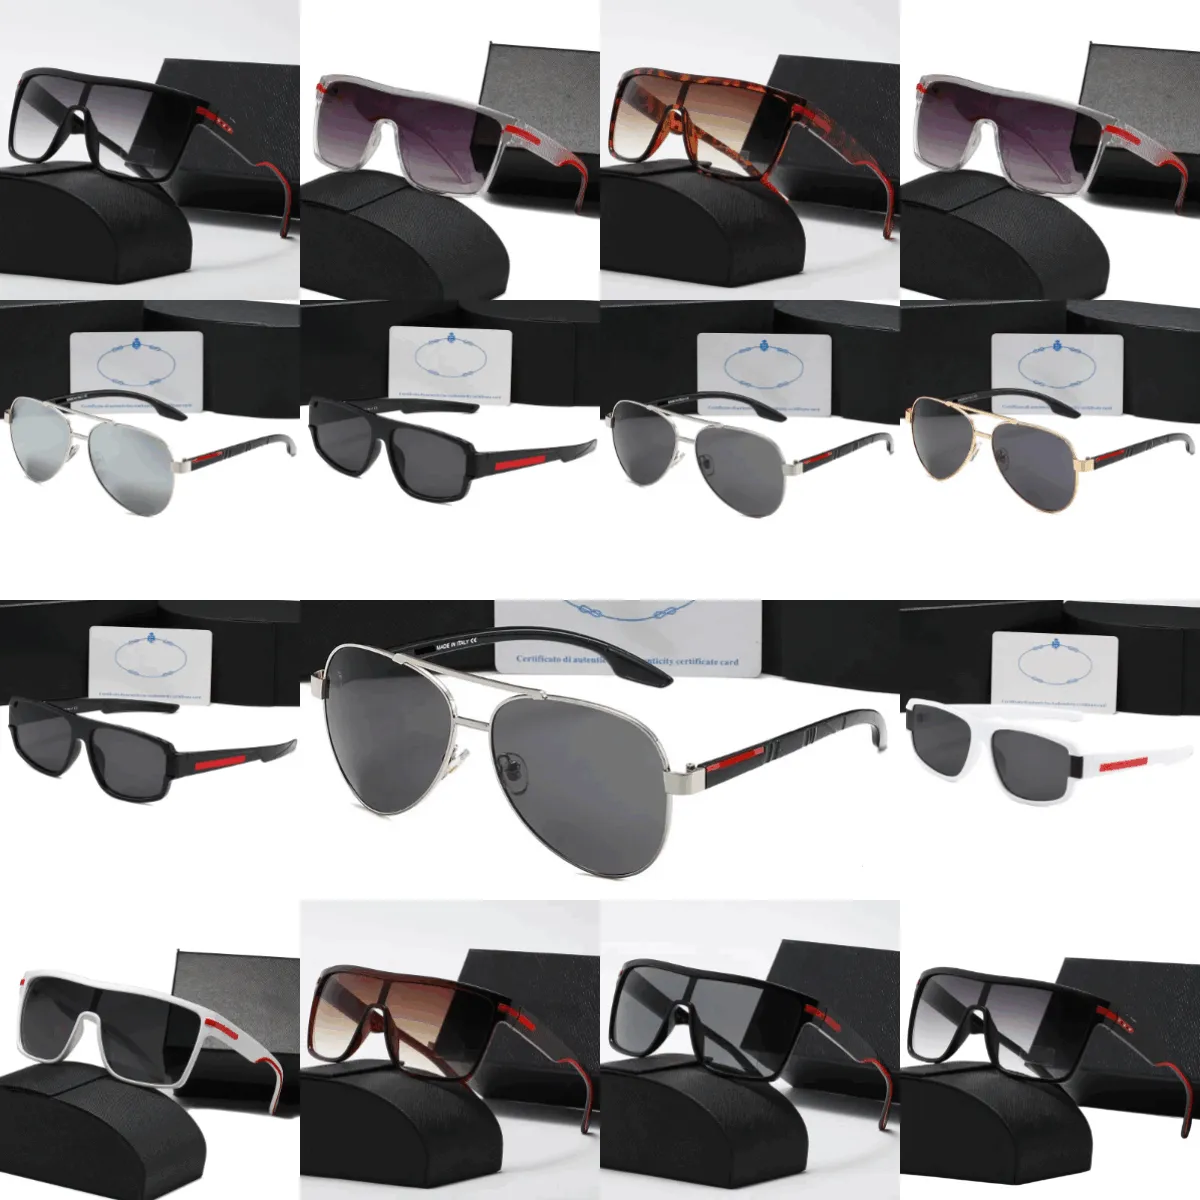 Nouveaux modèles unisexe marque de luxe Design lunettes de soleil pour hommes mode classique UV400 été conduite en plein air ombrage lunettes lunettes lunettes loisirs 0110 2202 003WF